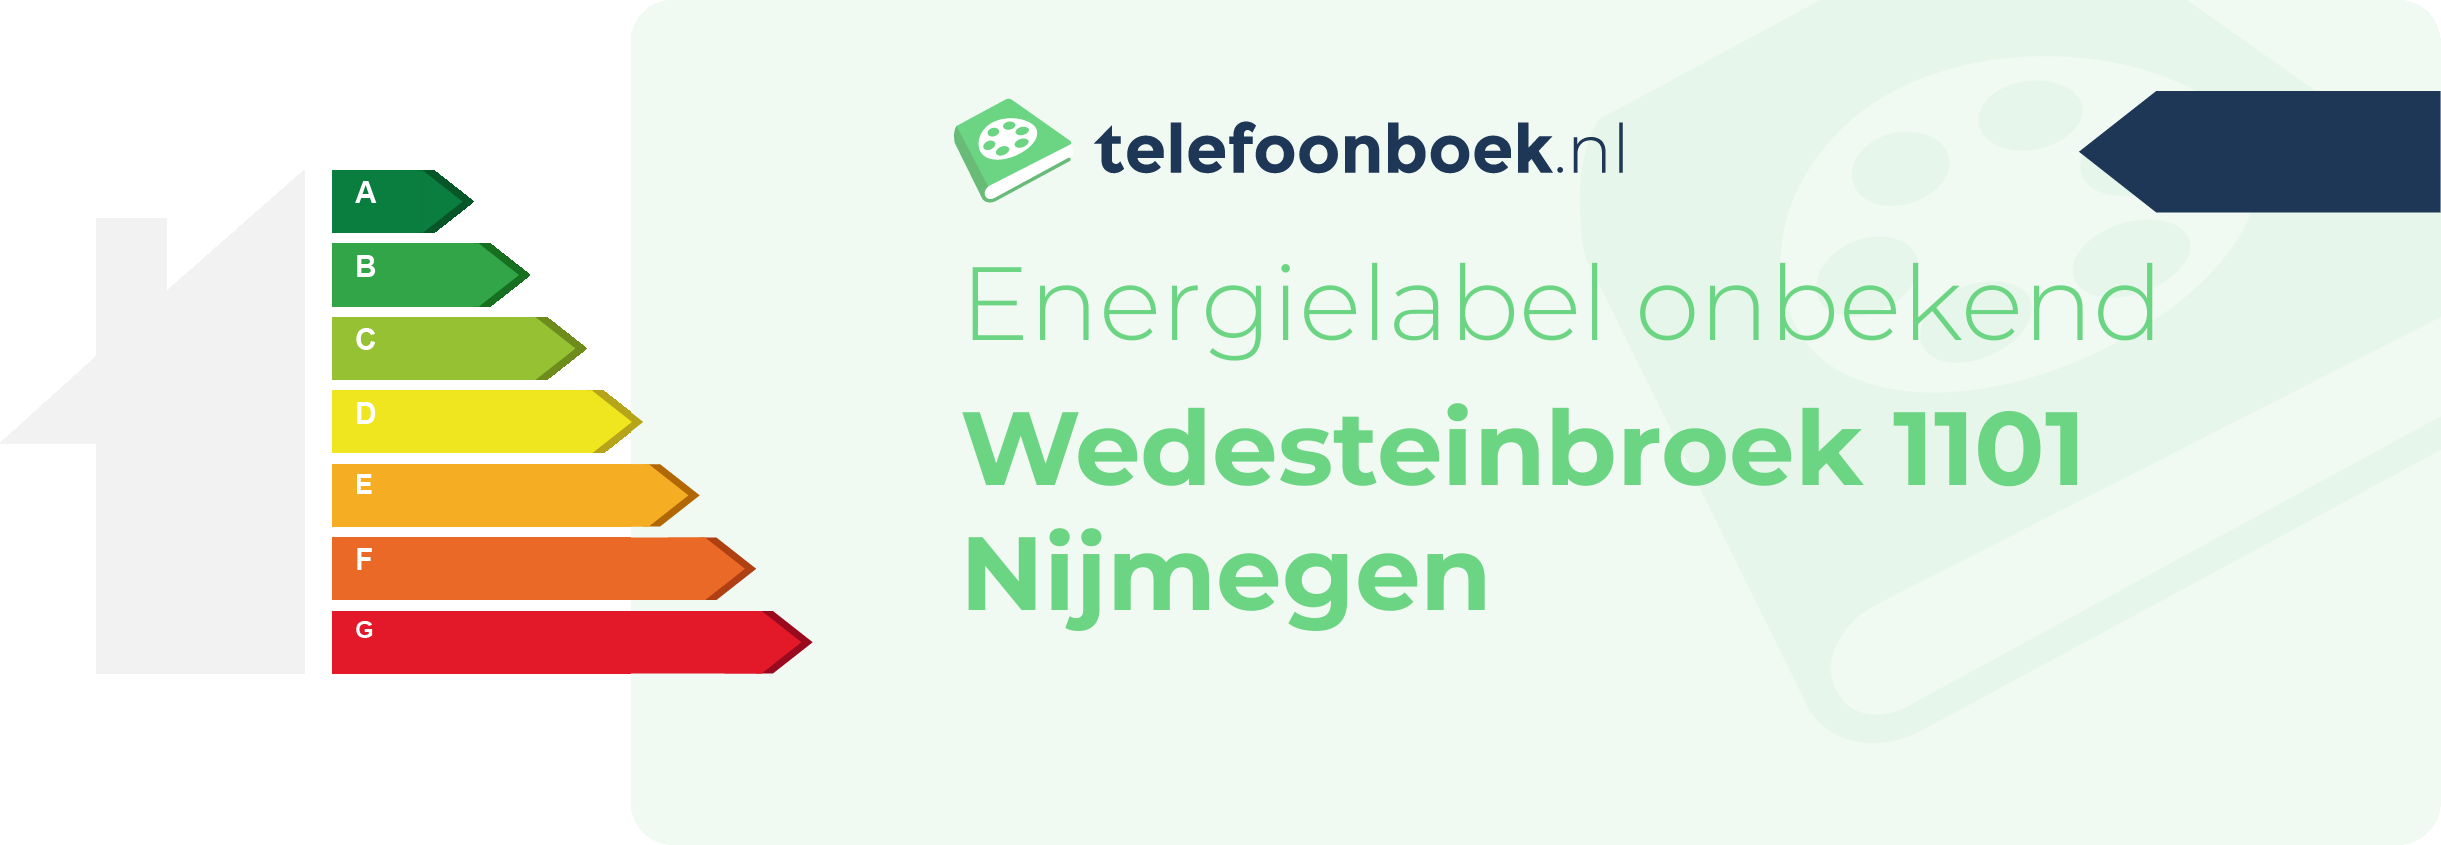 Energielabel Wedesteinbroek 1101 Nijmegen